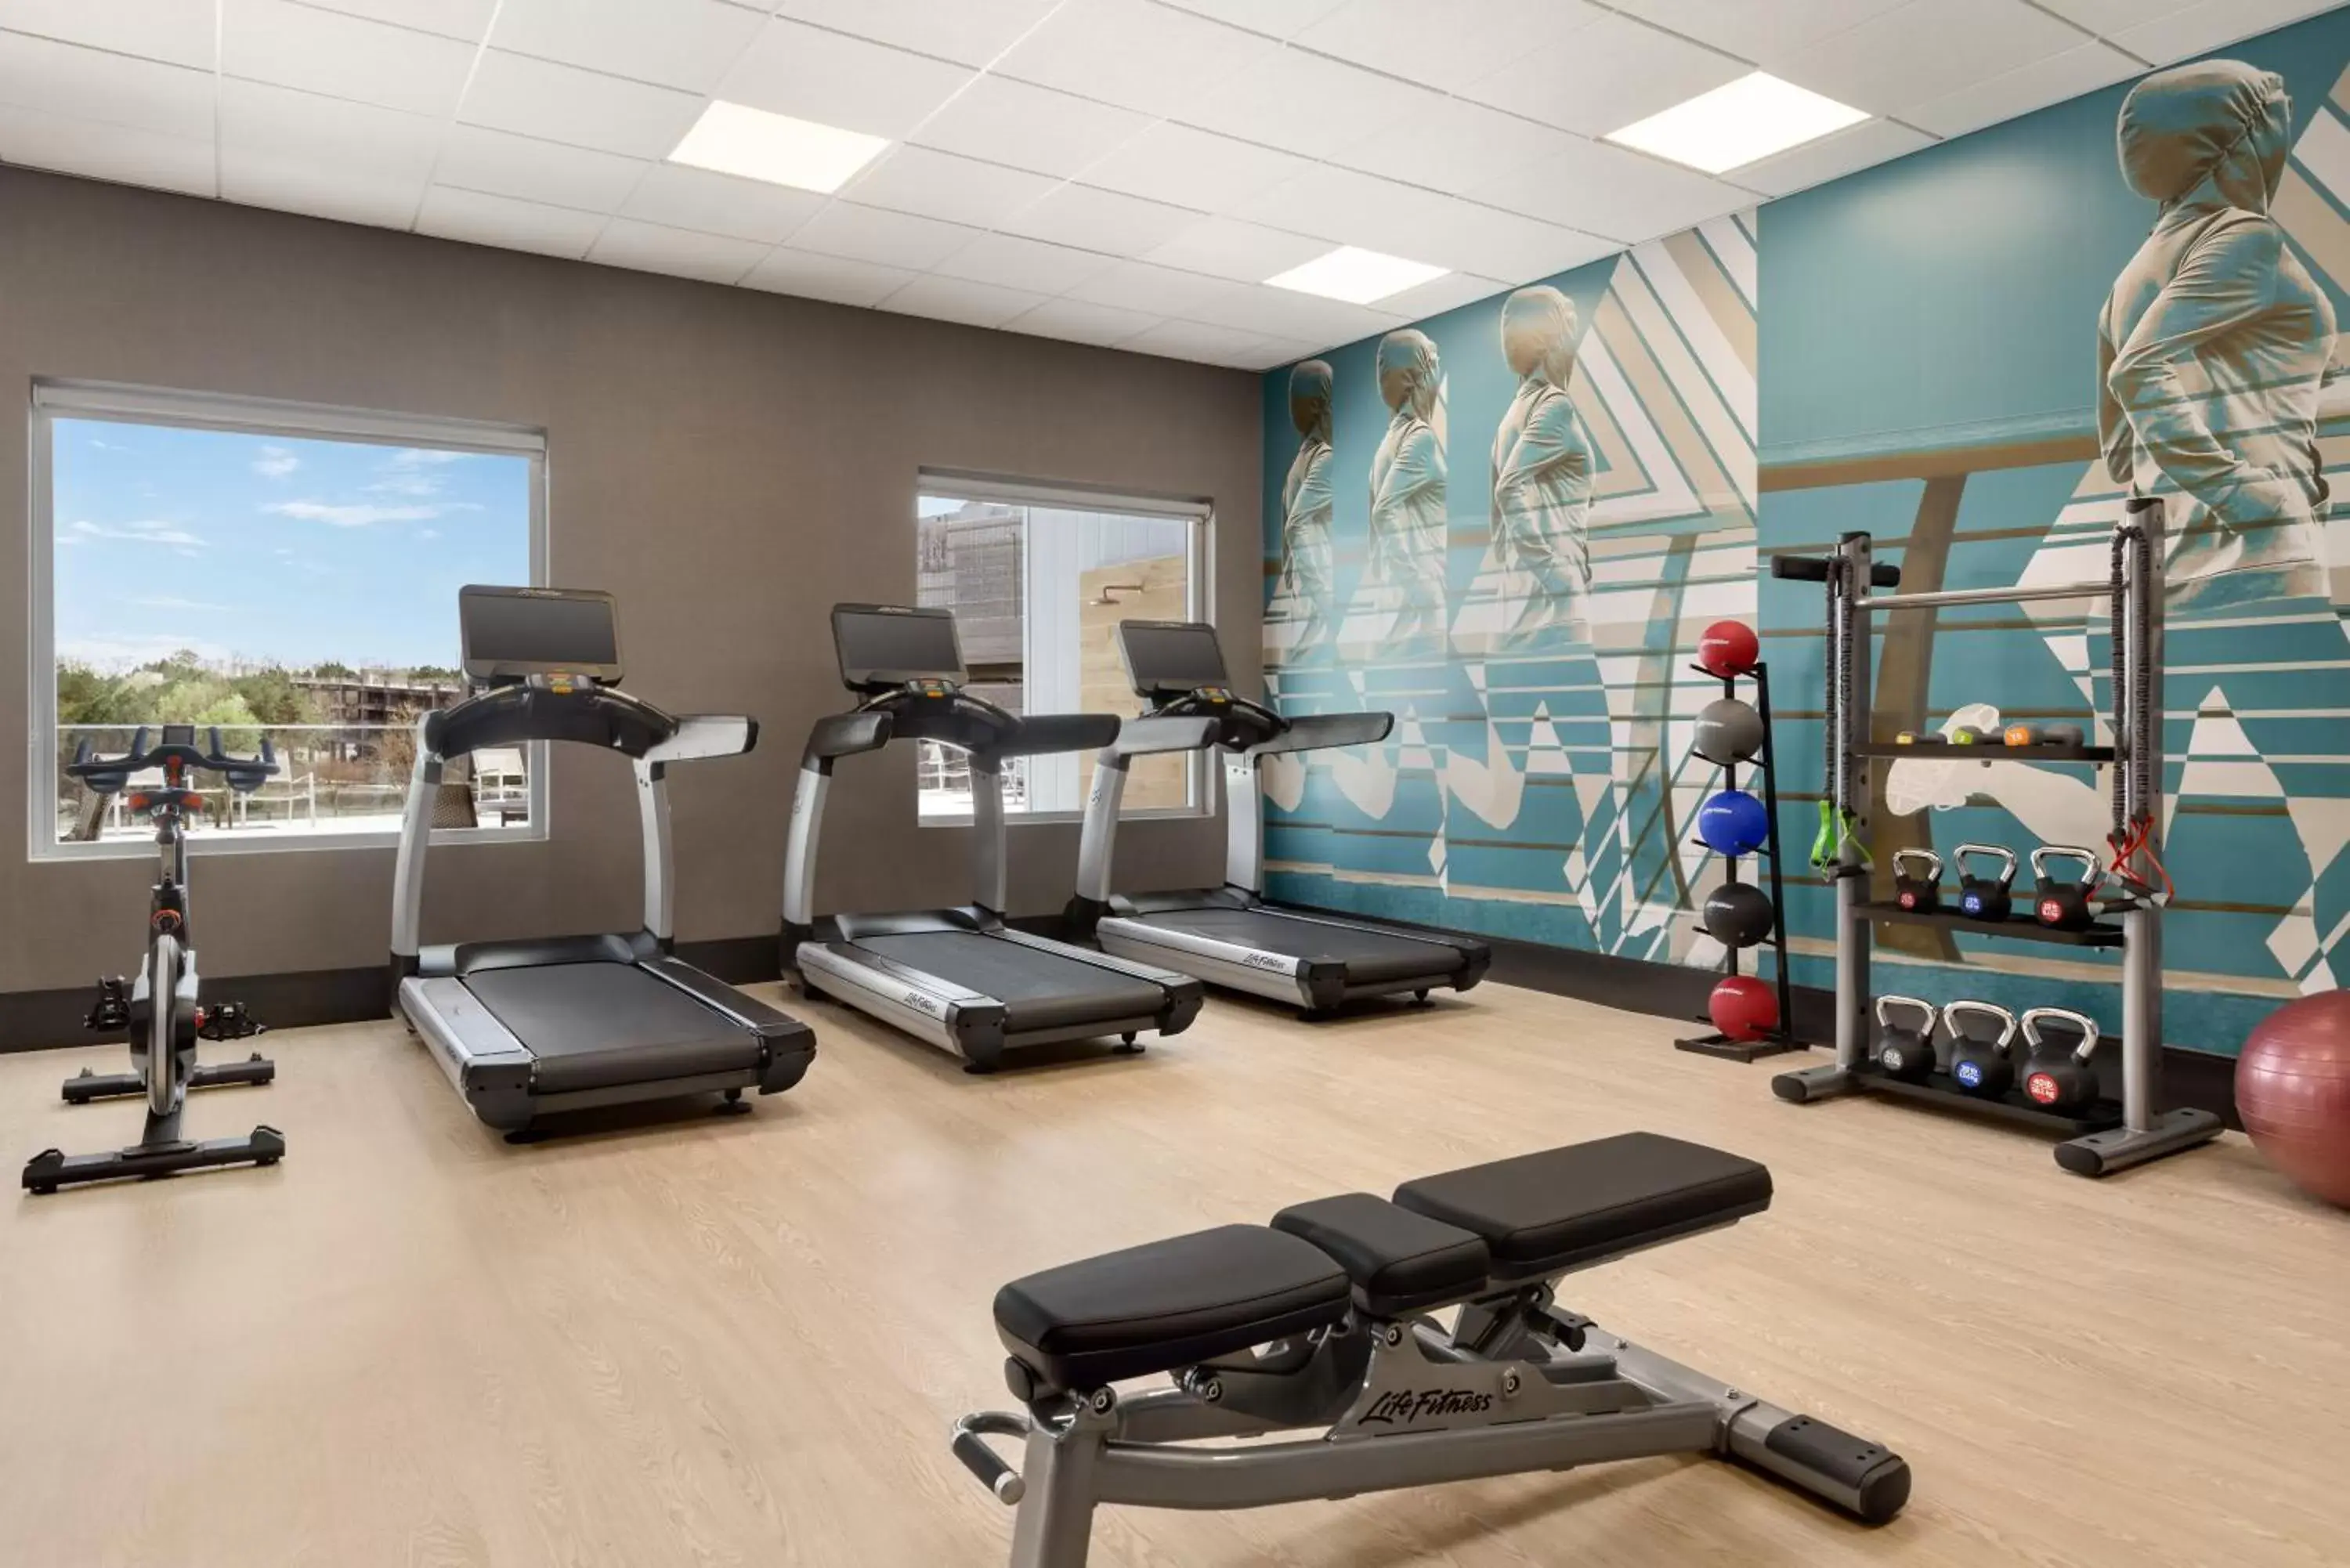 Fitness centre/facilities in Hyatt House Atlanta Perimeter Center